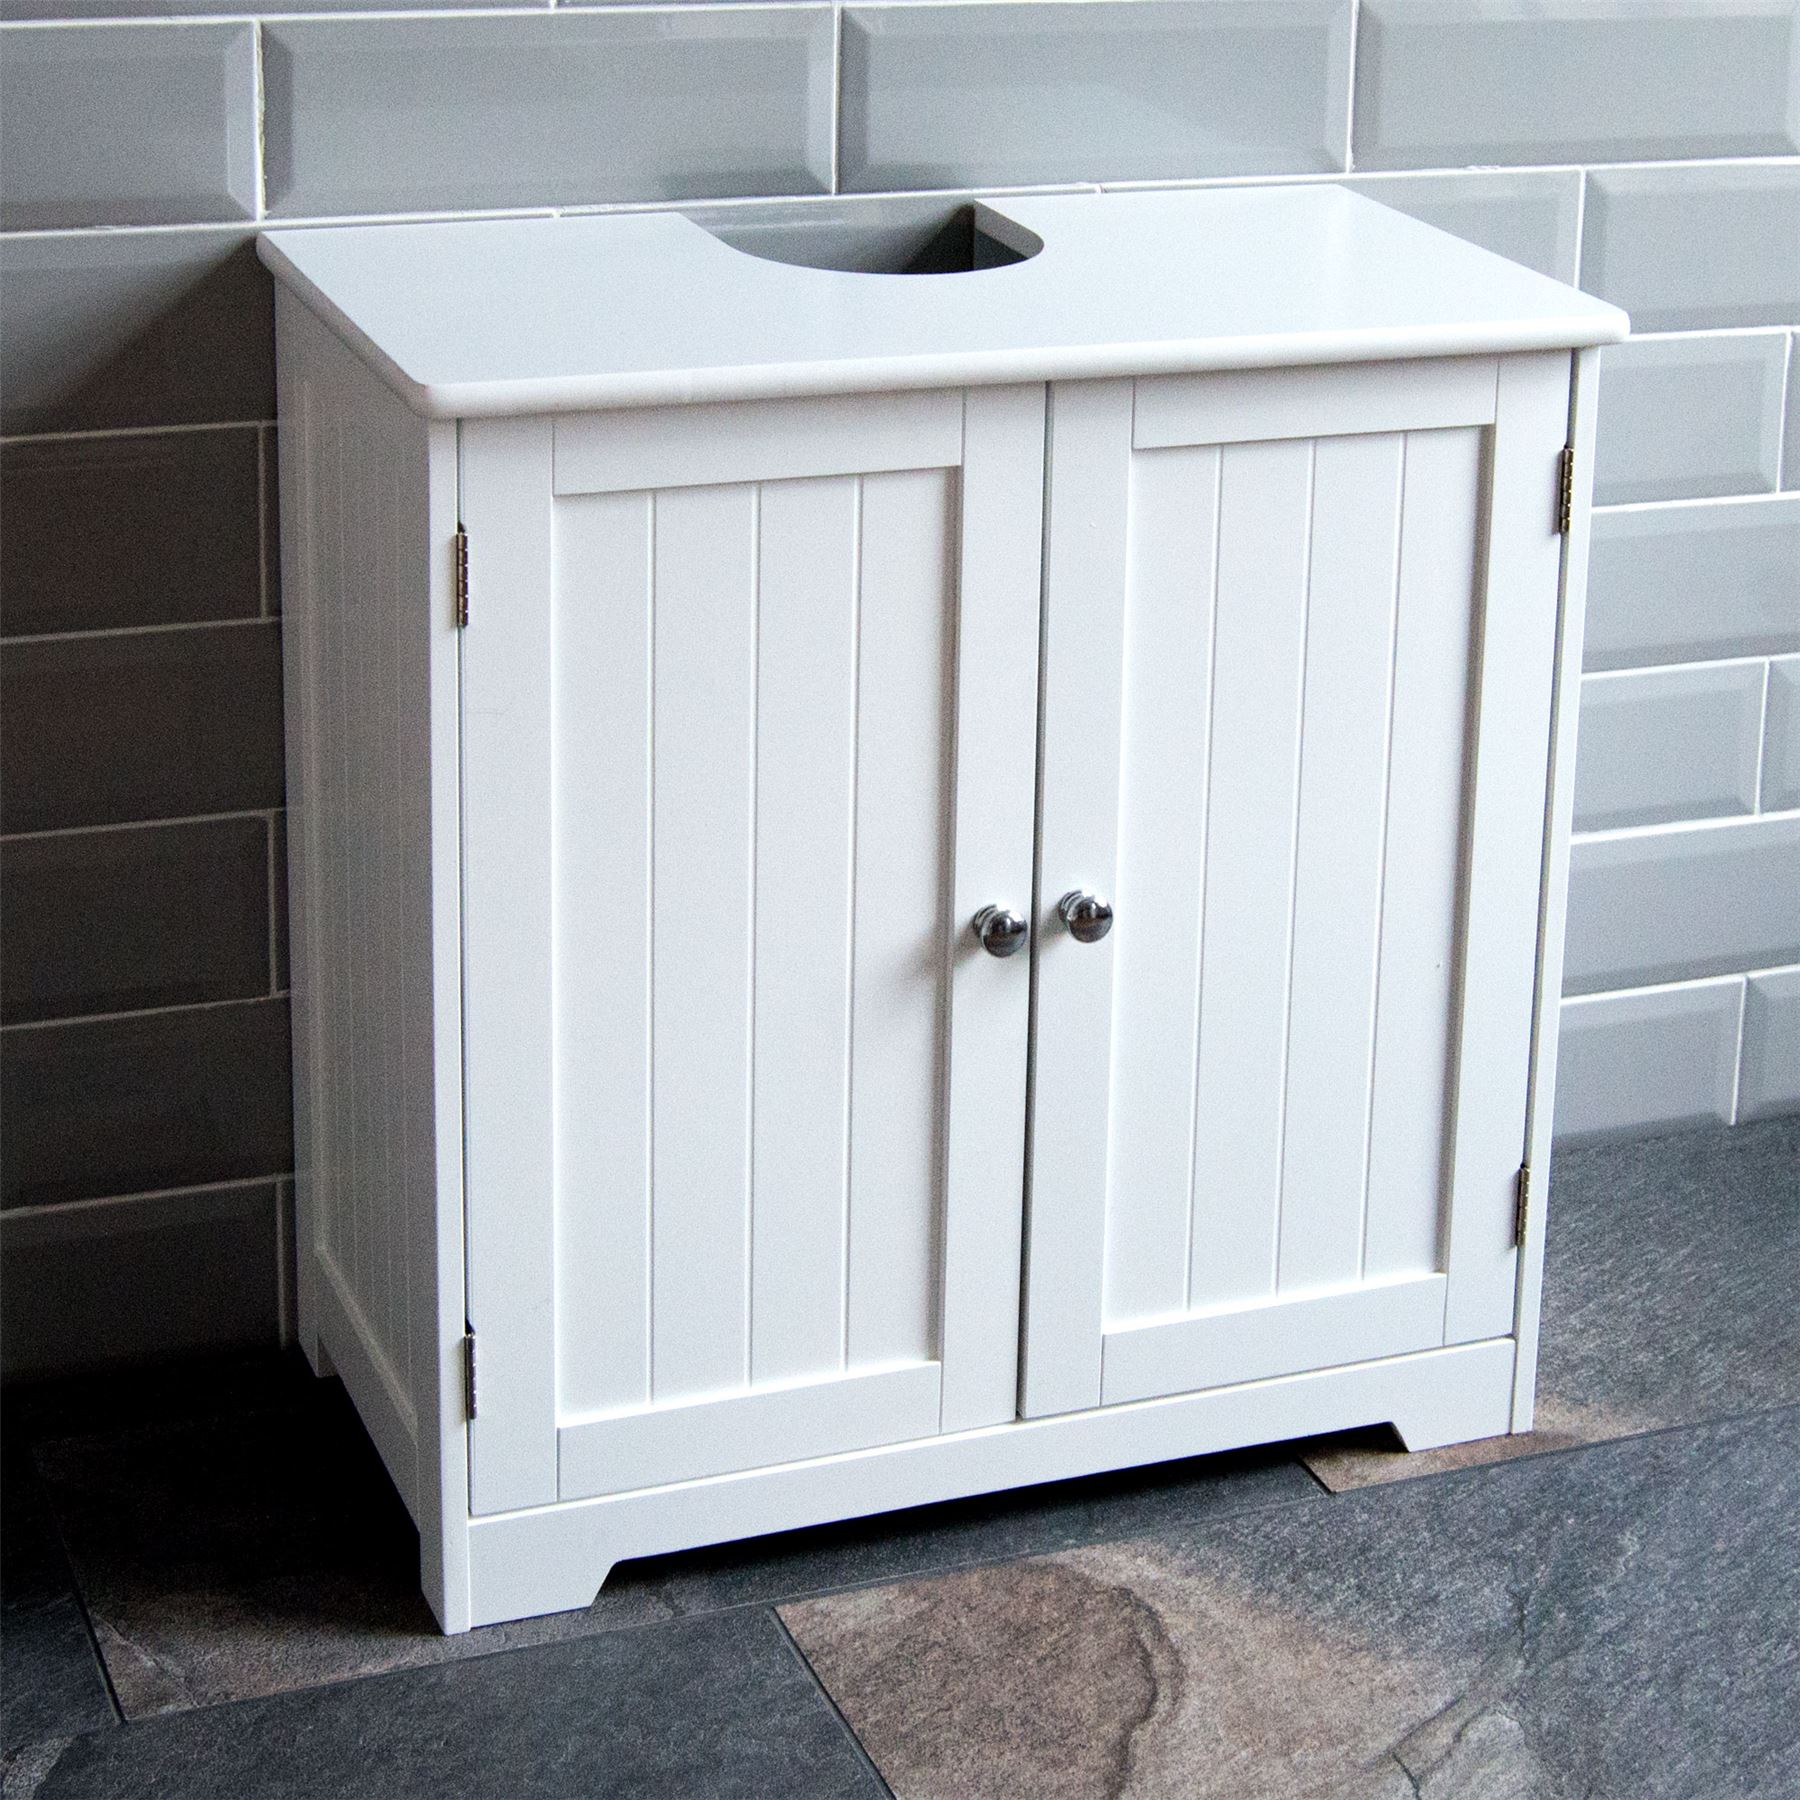 Details About Priano Bathroom Sink Cabinet Under Basin Unit Cupboard Storage Furniture White regarding size 1800 X 1800